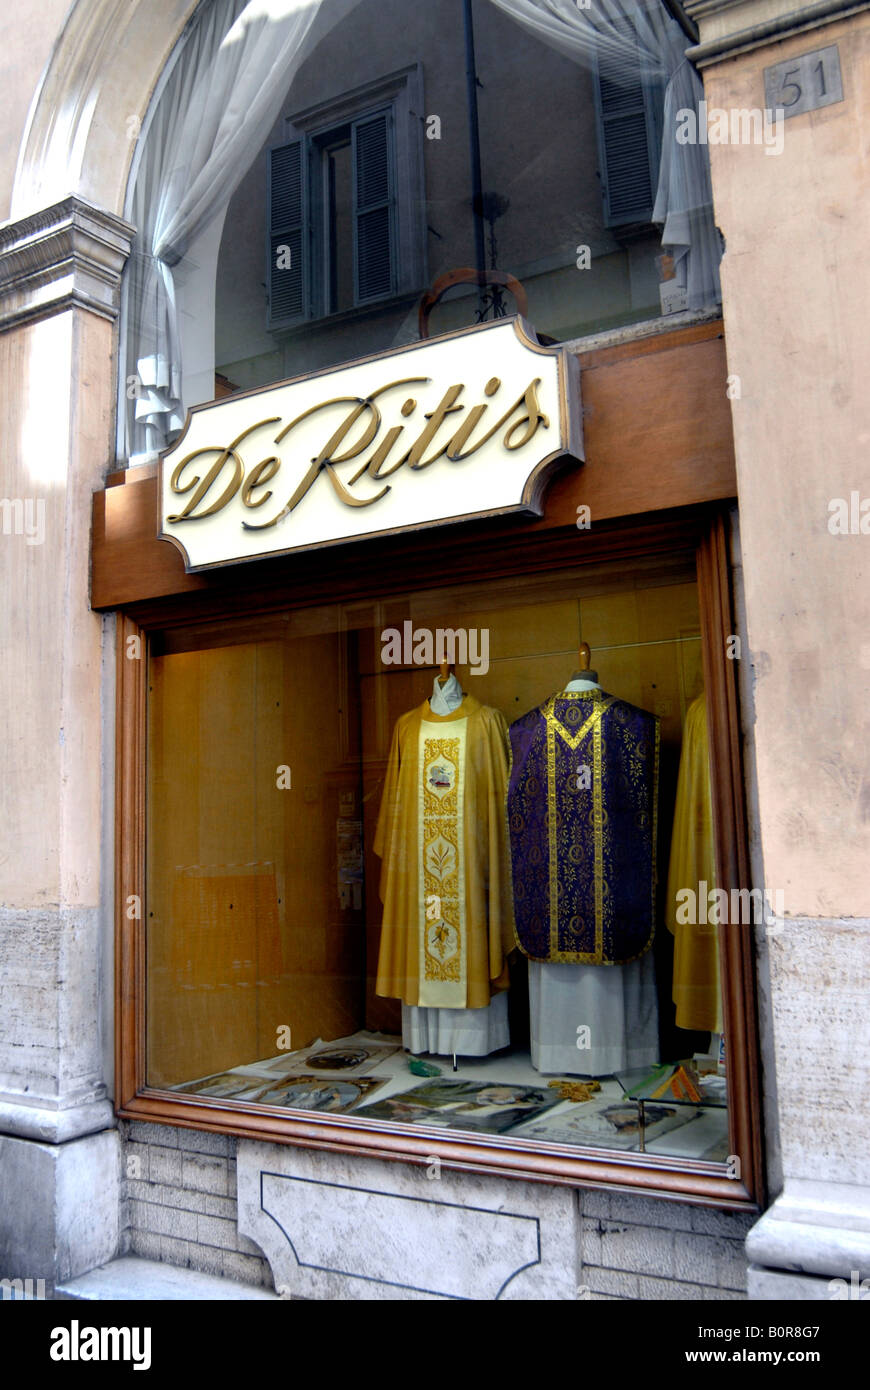 Boutique de vêtements ecclésiastiques, de Ritis, Roma Italie Photo Stock -  Alamy